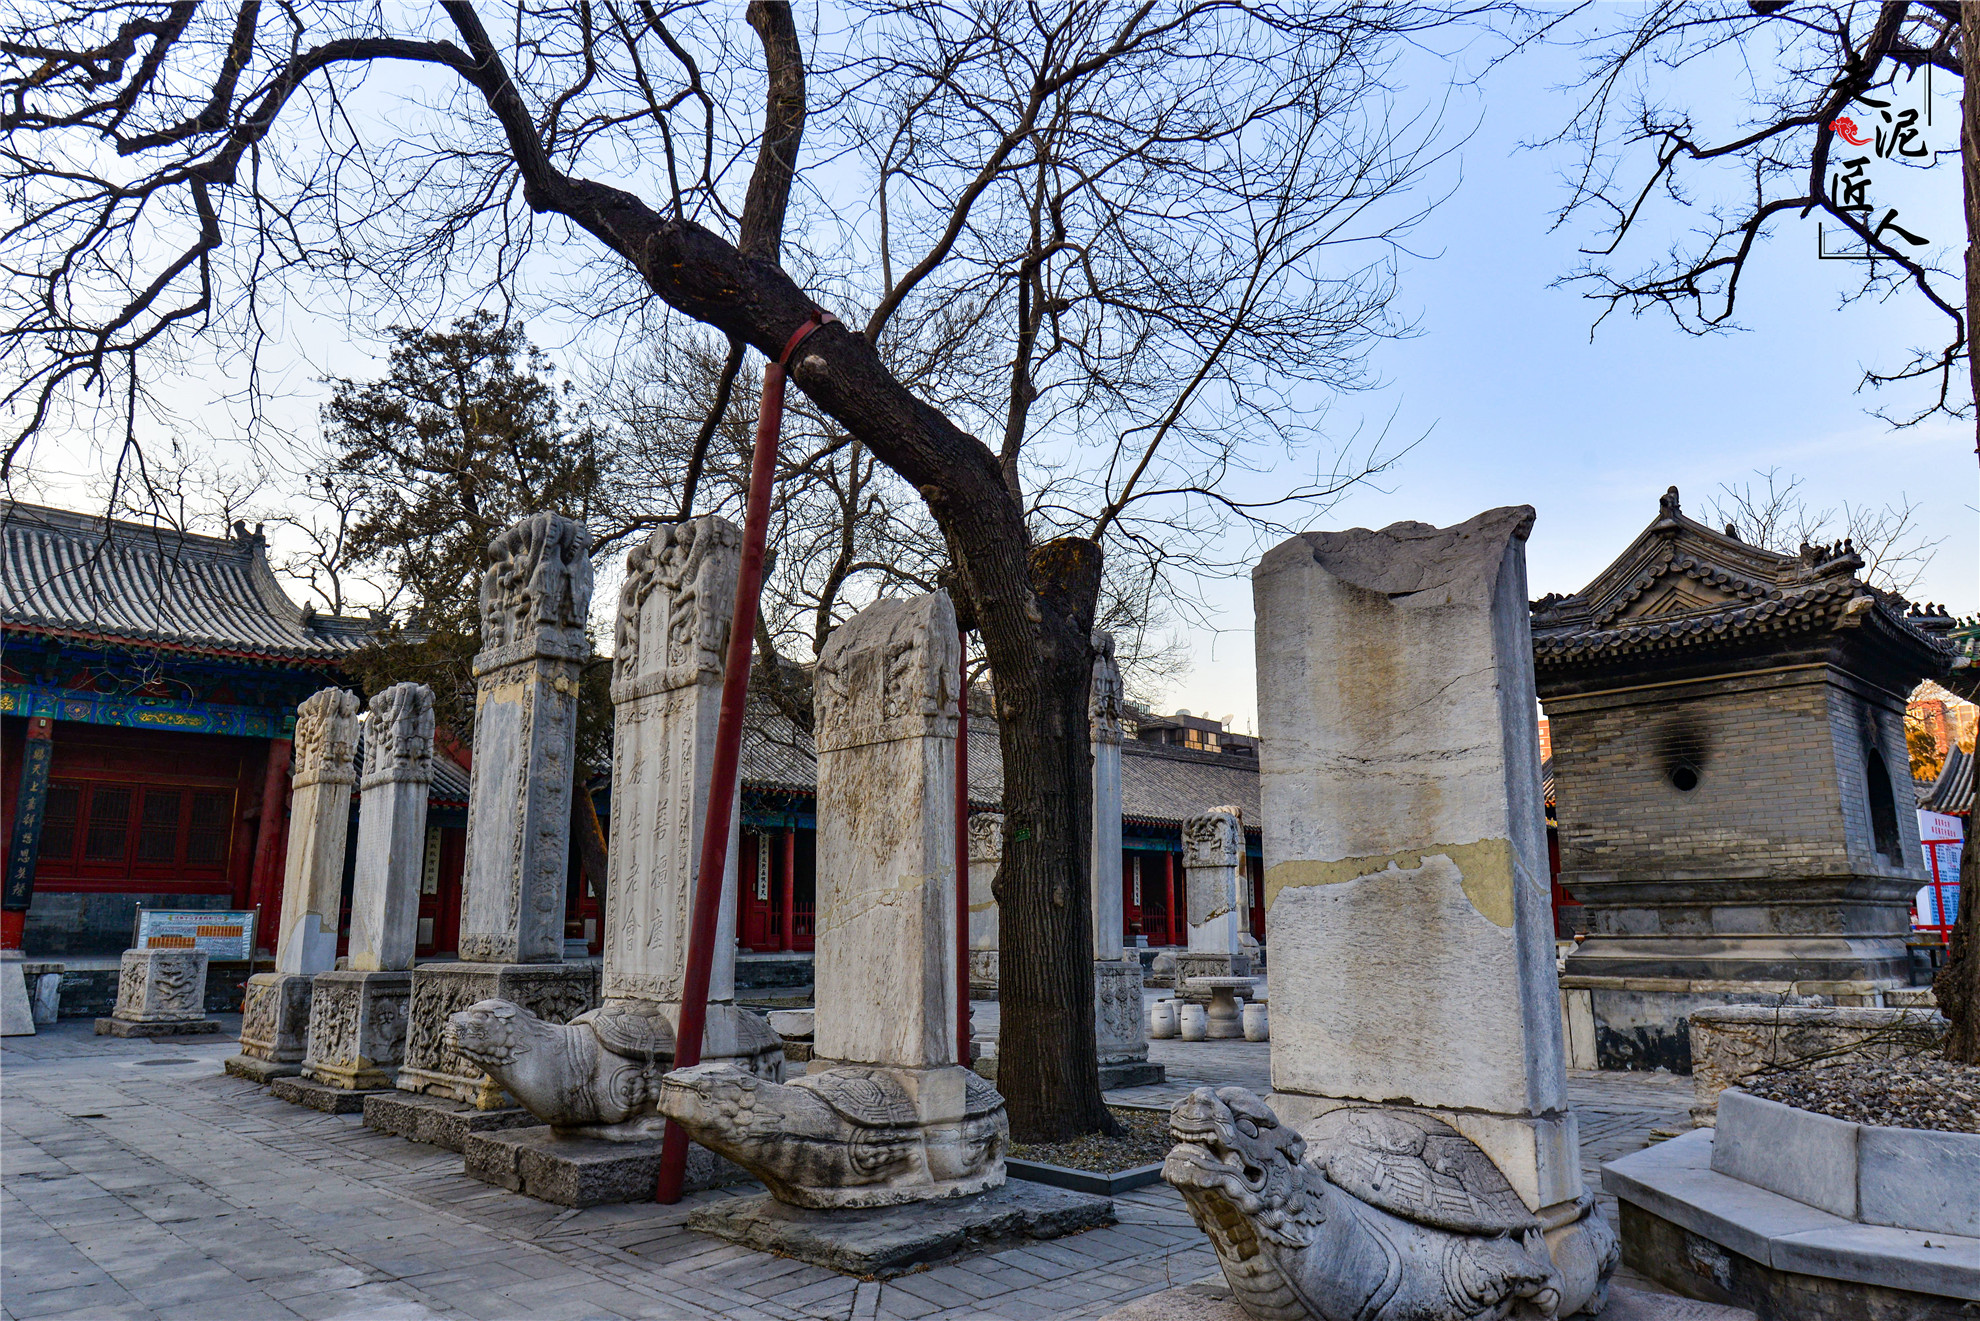 道教正一派在华北地区最大的庙观——东岳庙